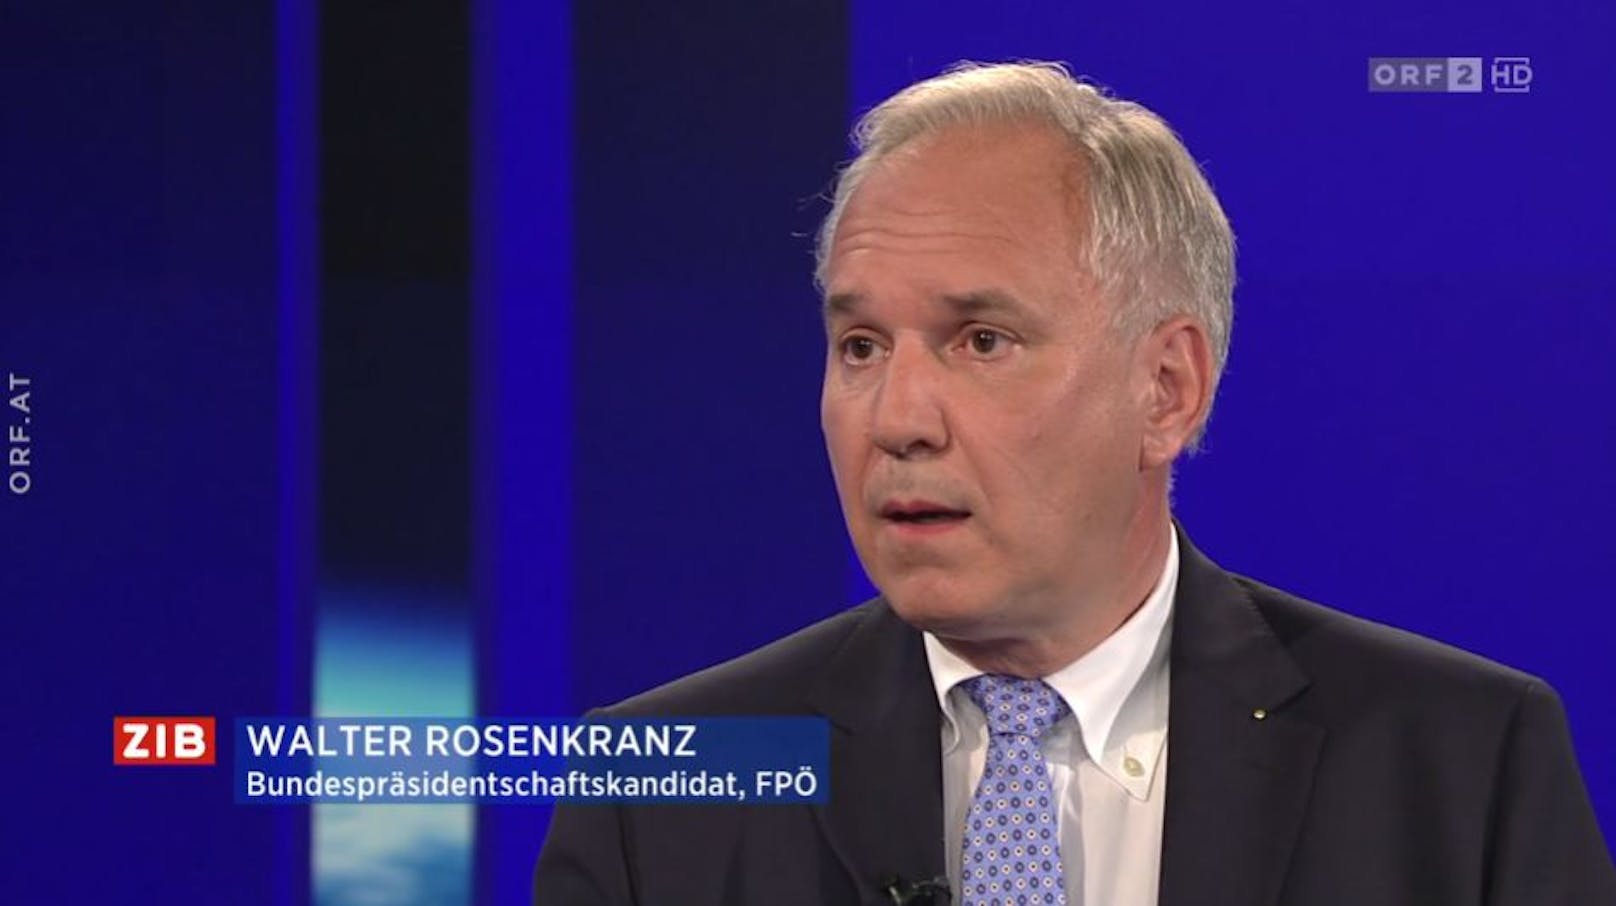 Hofburgkandidat Walter Rosenkranz in der ZIB2 zu Gast bei Martin Thür am 26. September 2022.